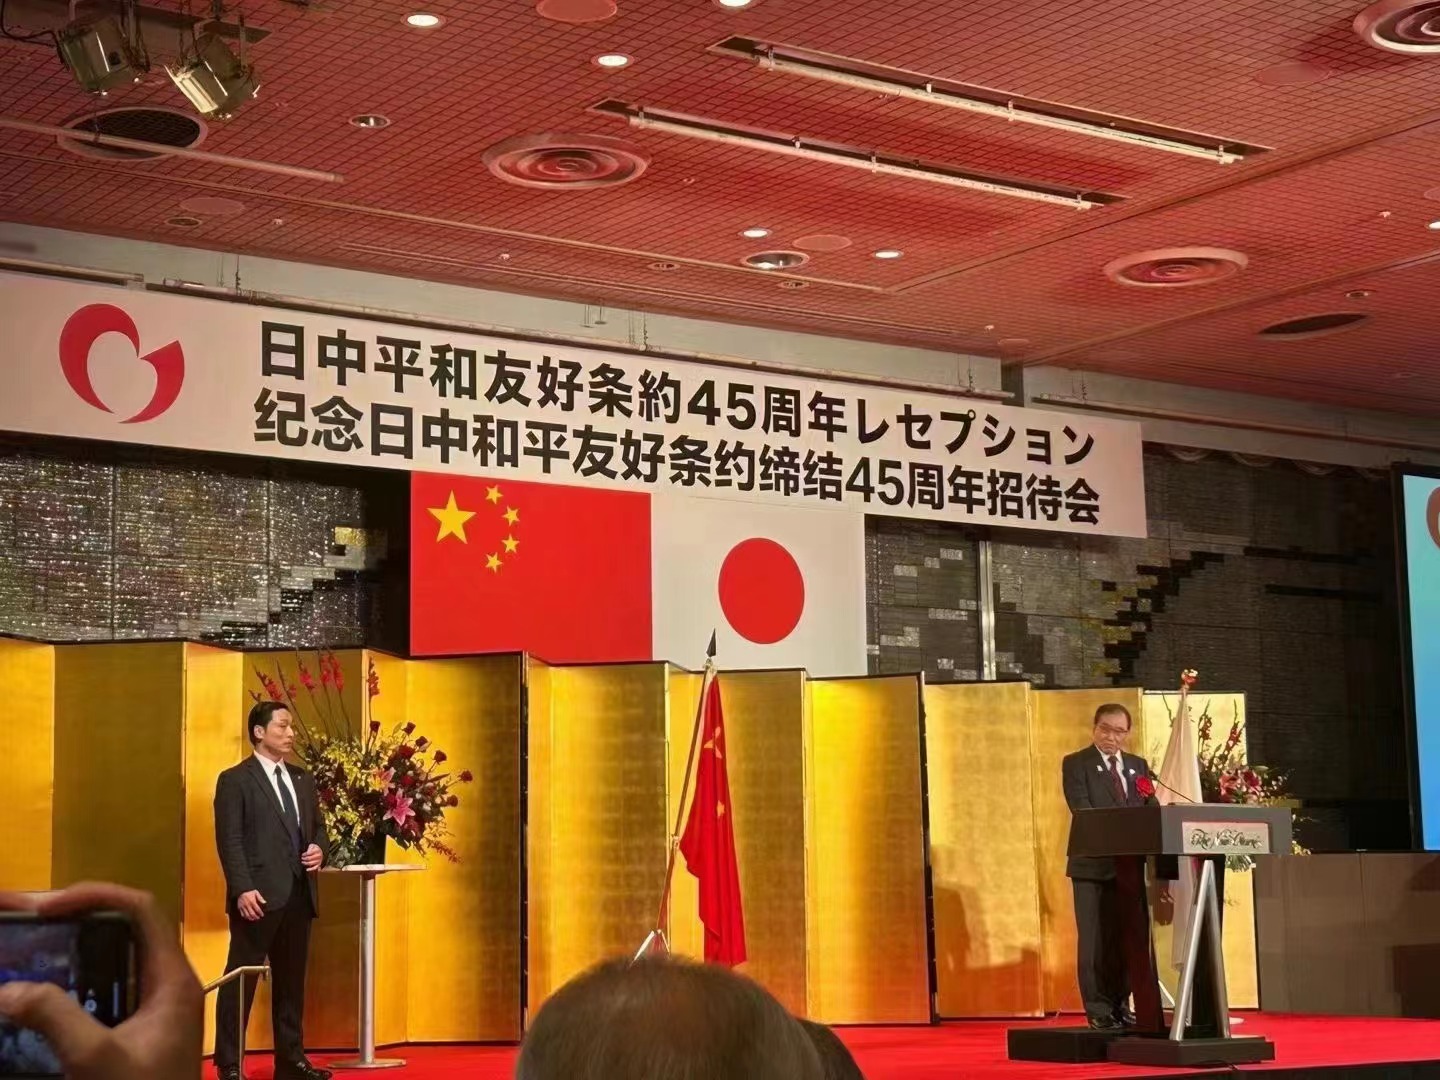 日中平和友好条約締結45周年を記念し、日本各界共催の大規模レセプションに出席。